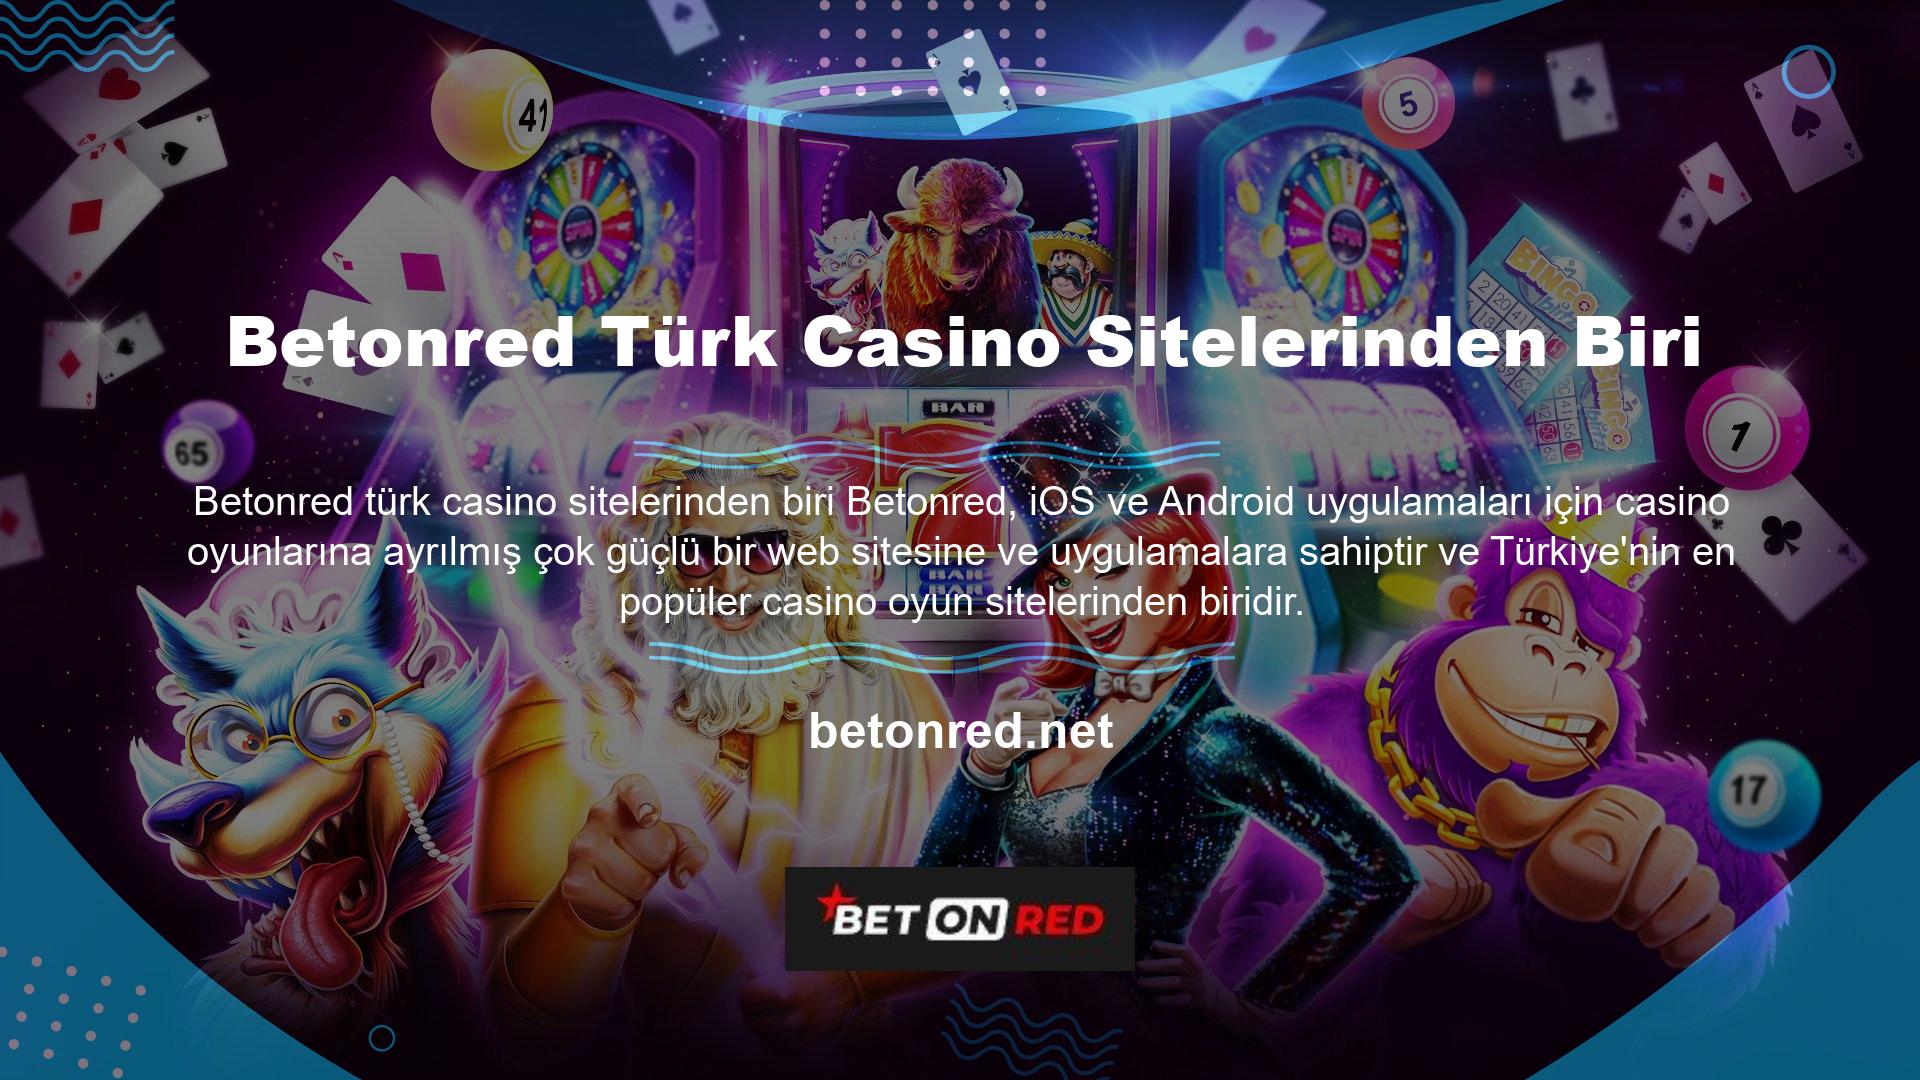 7/24 destek, bu site uluslararası lisansa sahip olduğu için bu sitedeki casino oyunları uluslararası hukuka göre yasaldır